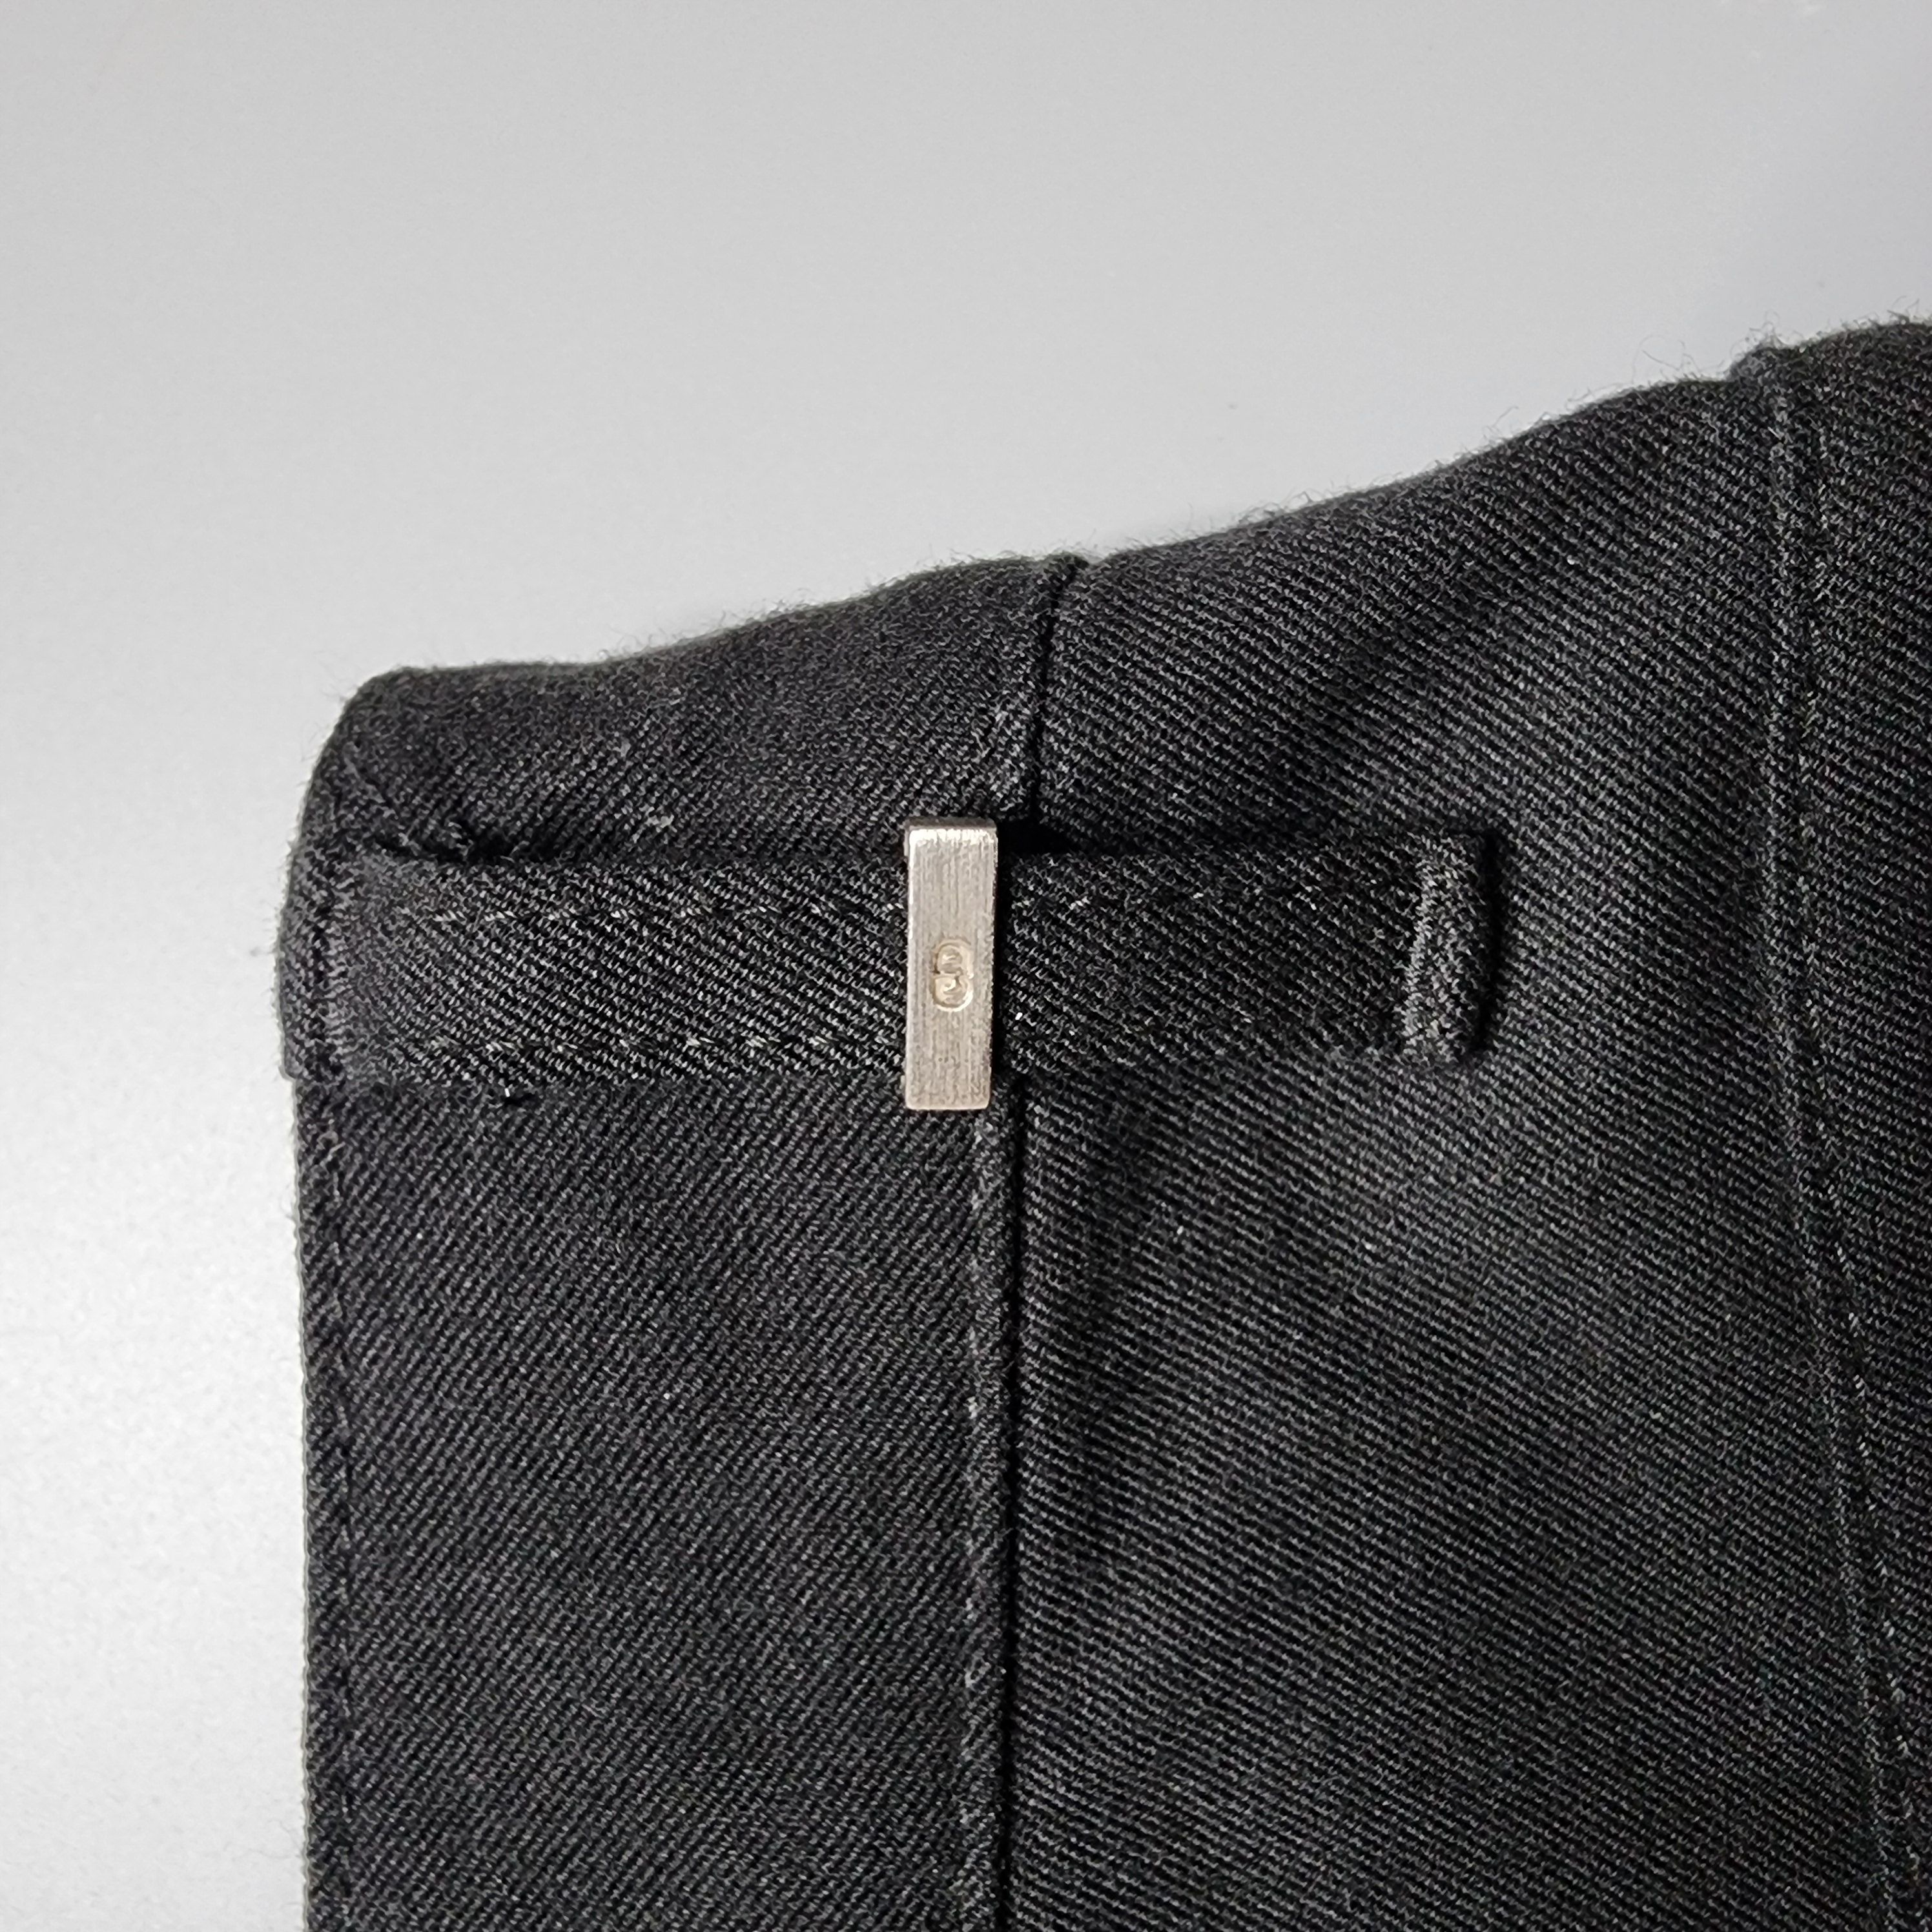 Dior Homme - SS07 Super Slender Jeans - 5